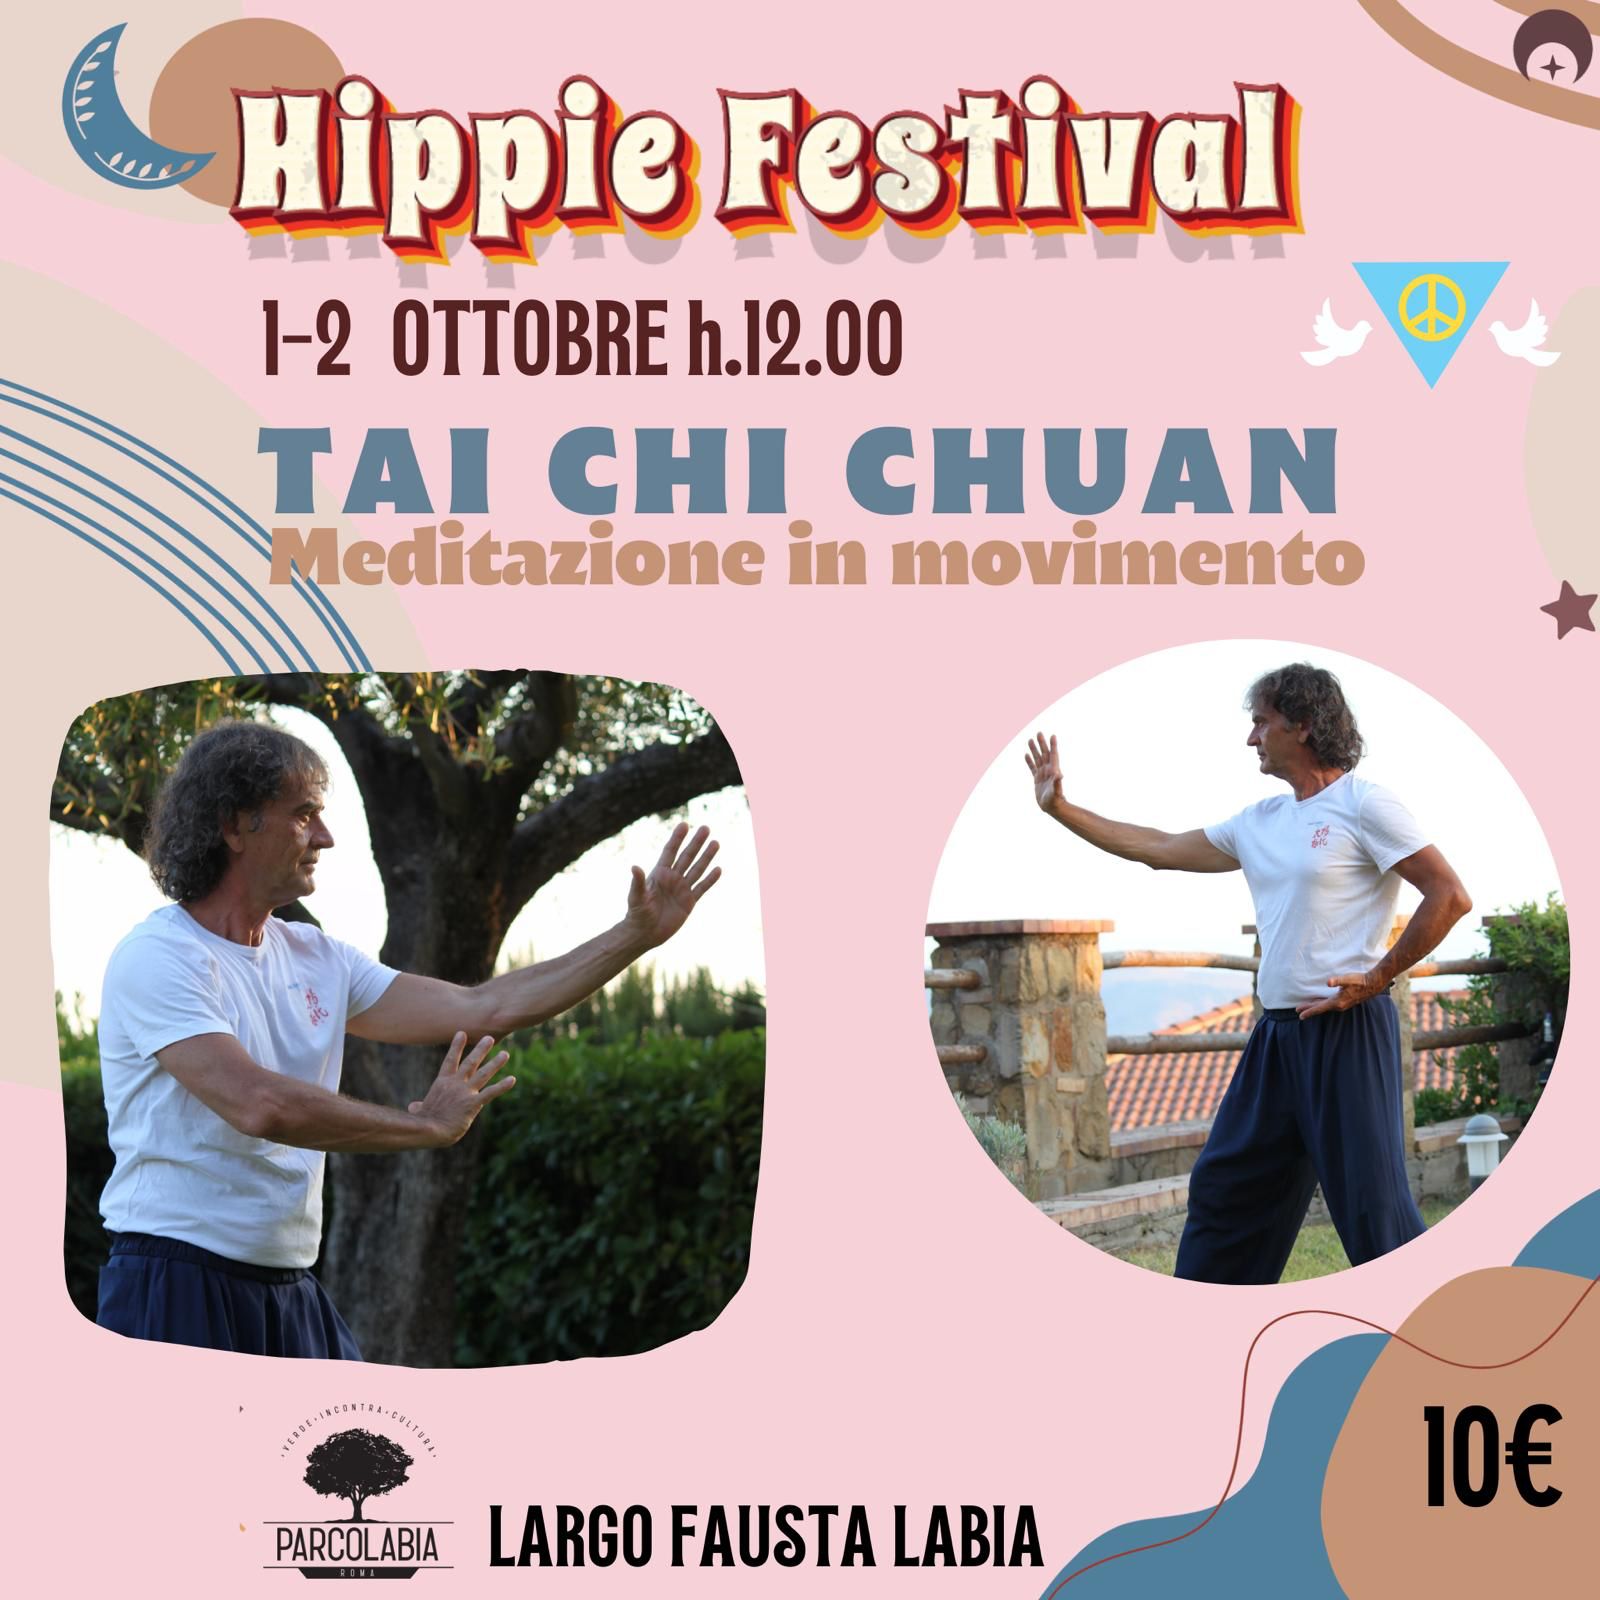 Hippie Festival – Tai Chi Chuan